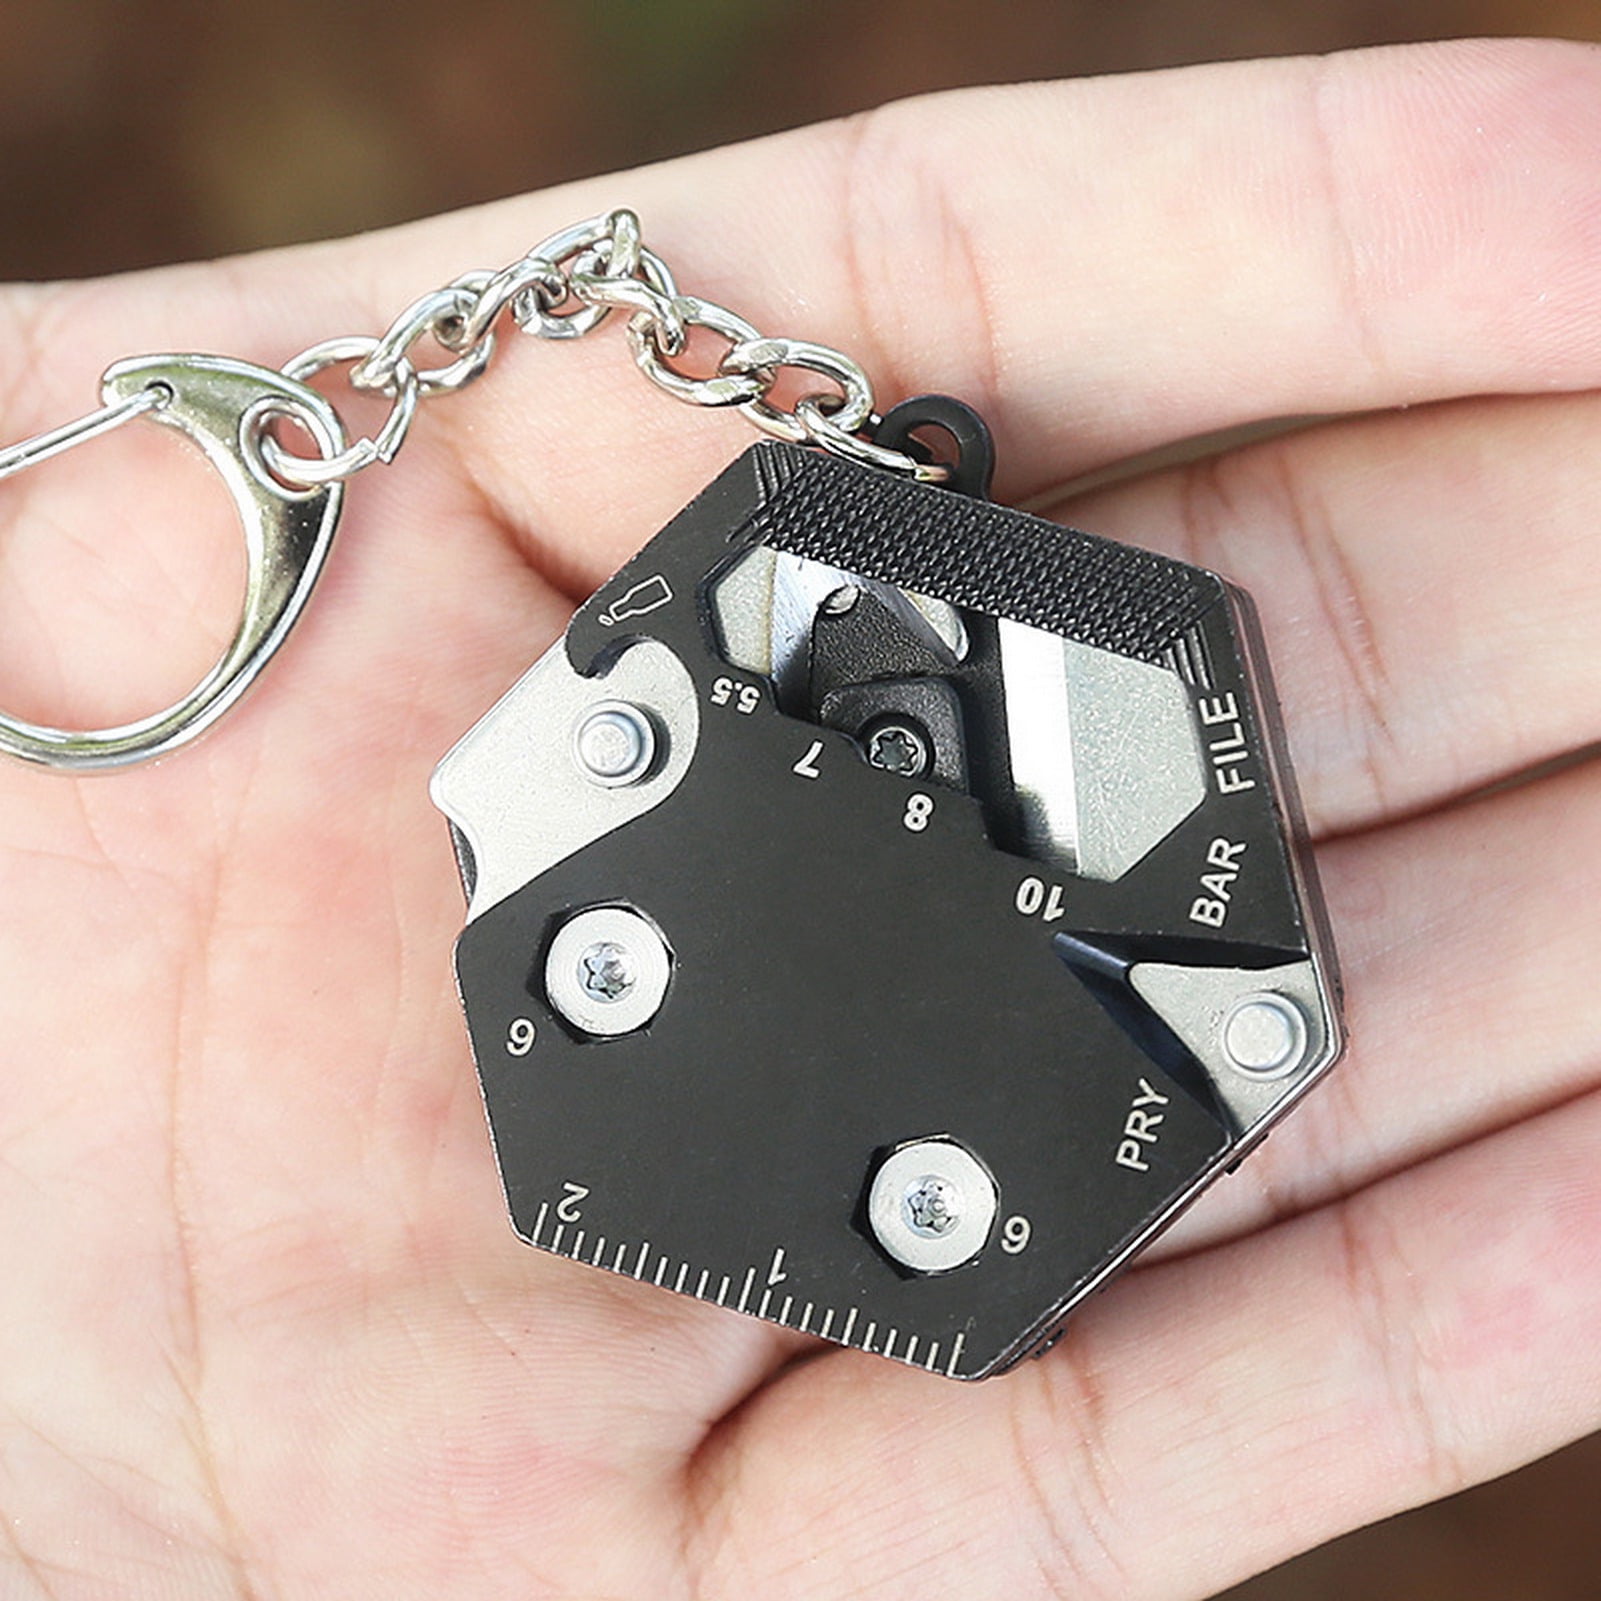 Edc Multifunction Led Keychain  Pocket Knife Keychain Scissors